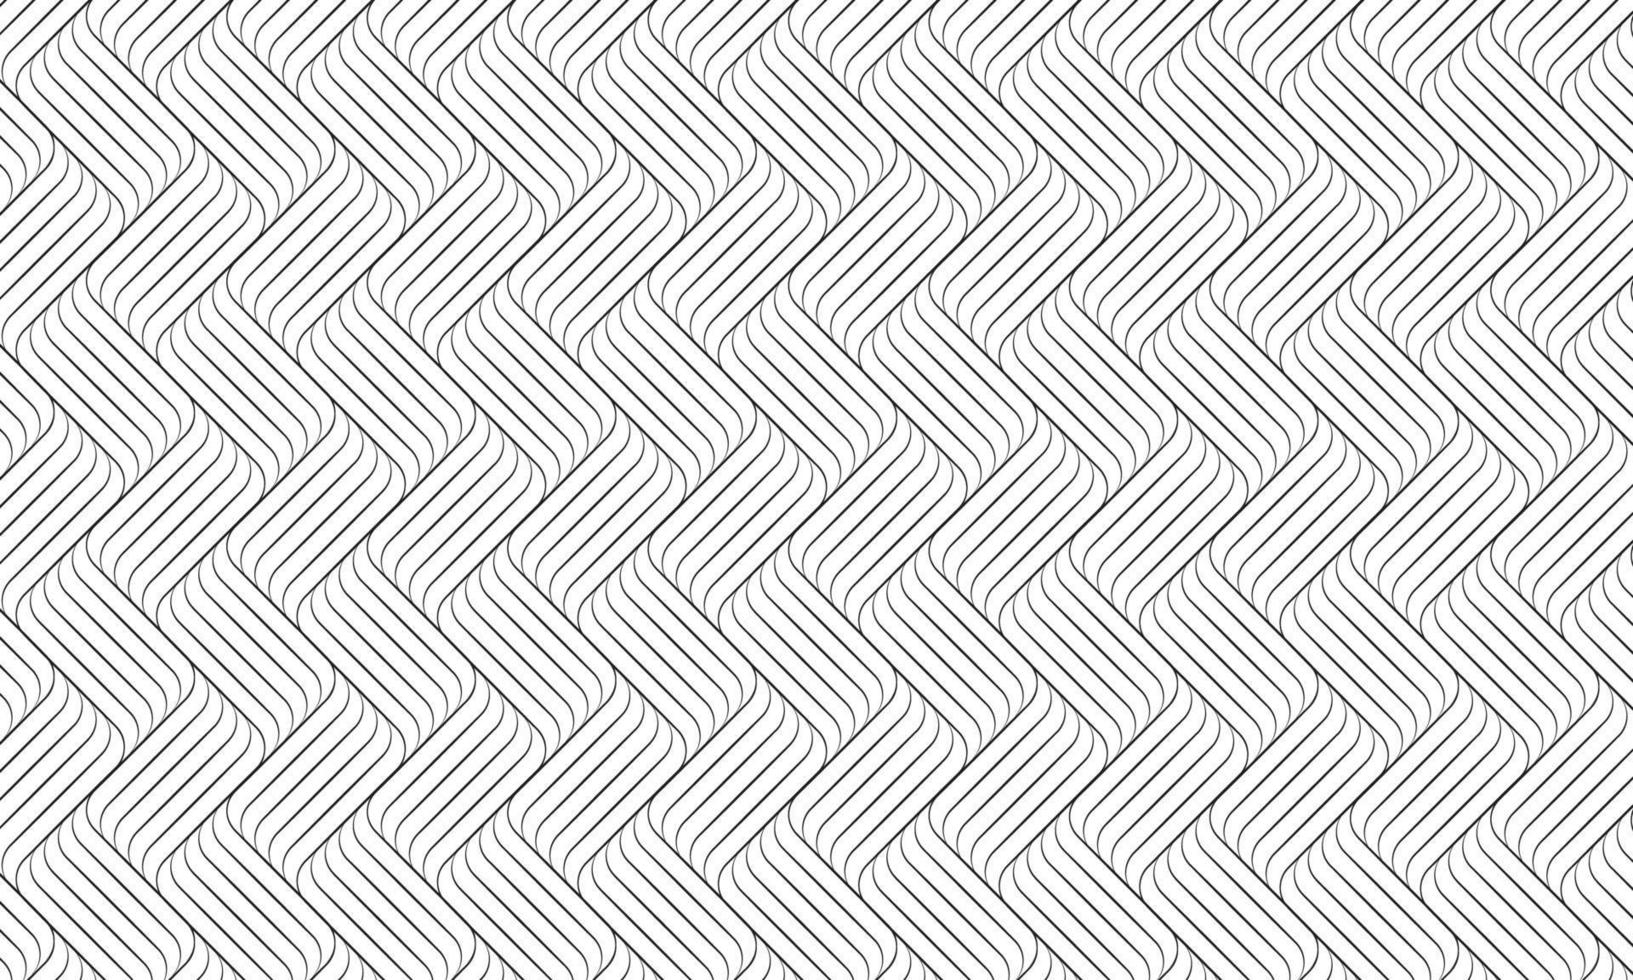 motif de vagues linéaires sur fond blanc, rayures noires abstraites vecteur